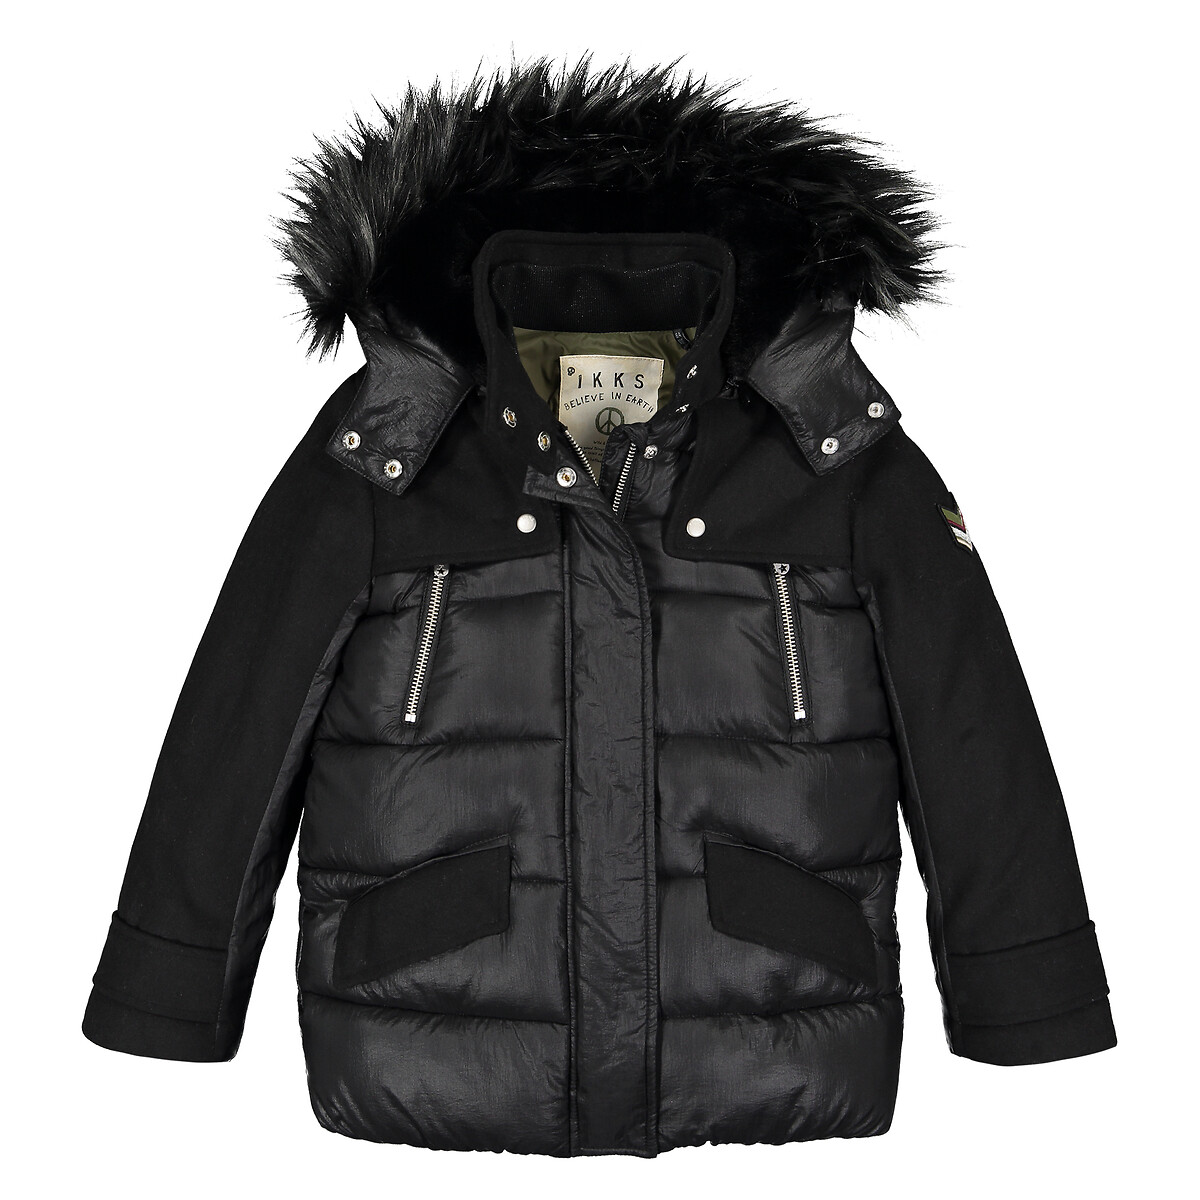 Куртка IKKS JUNIOR Длинная с капюшоном 4-14 лет 6 лет - 114 см черный, размер 6 лет - 114 см